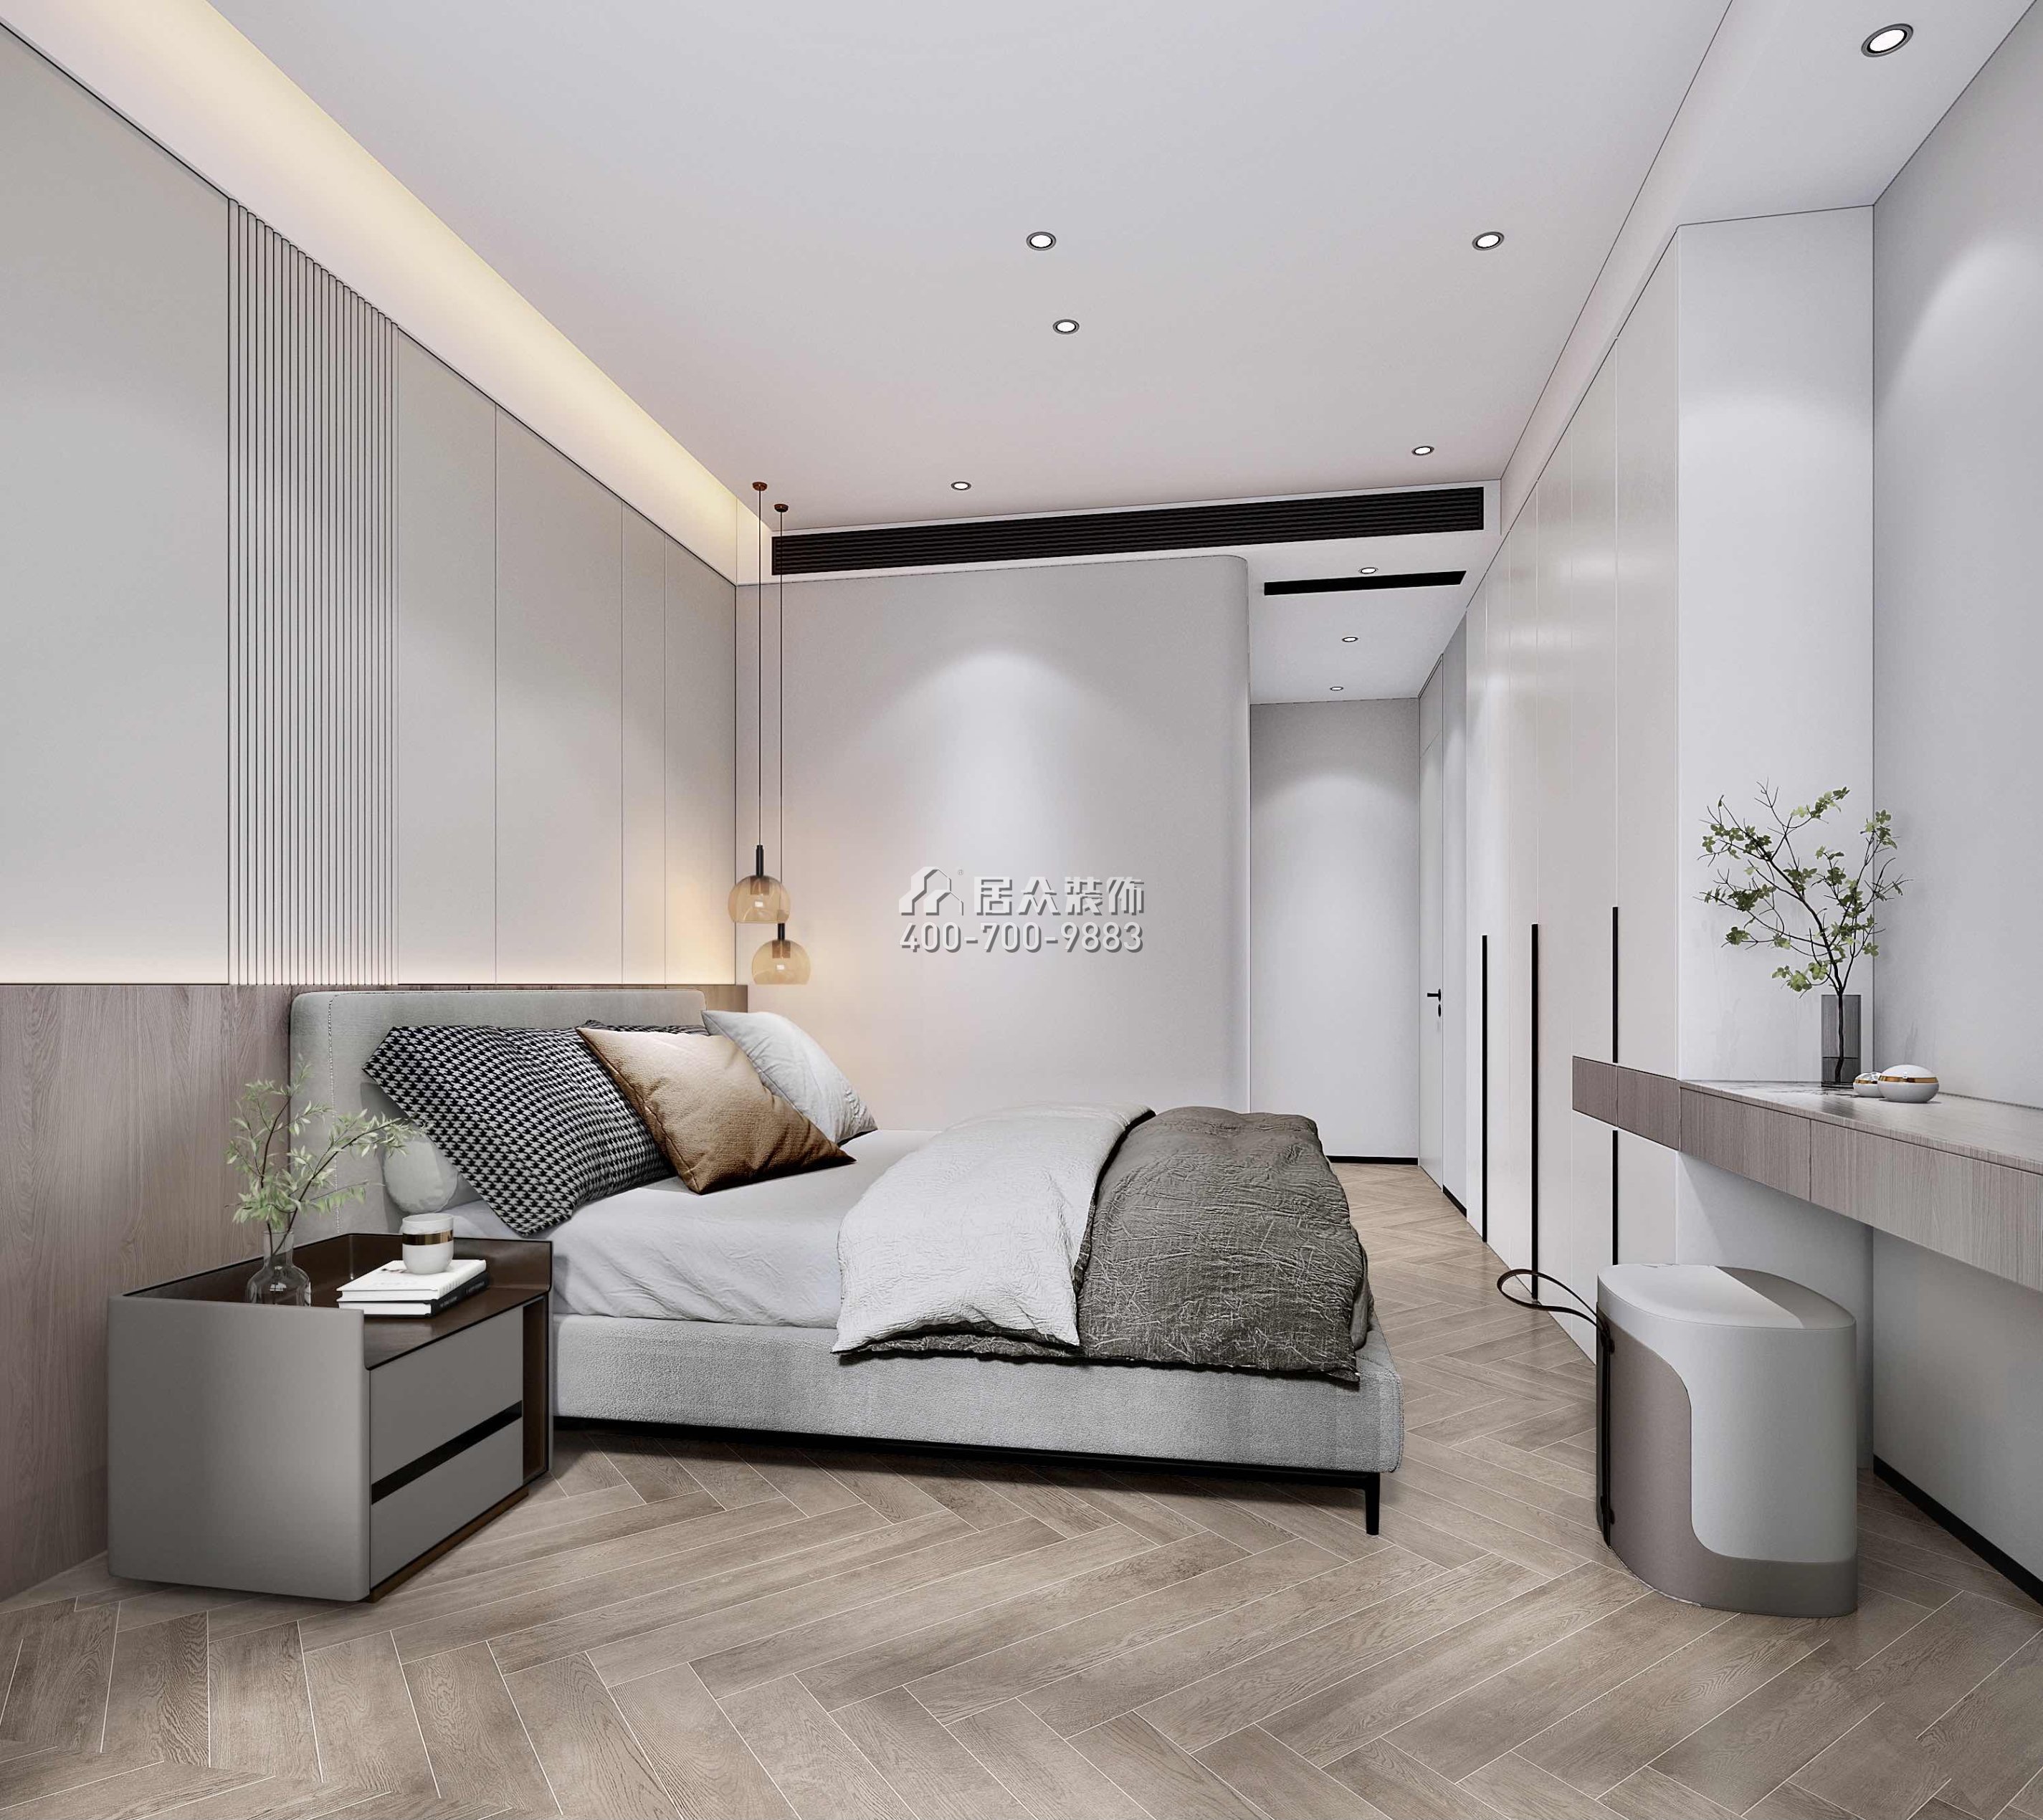 天健天骄南苑120平方米现代简约风格平层户型卧室装修效果图